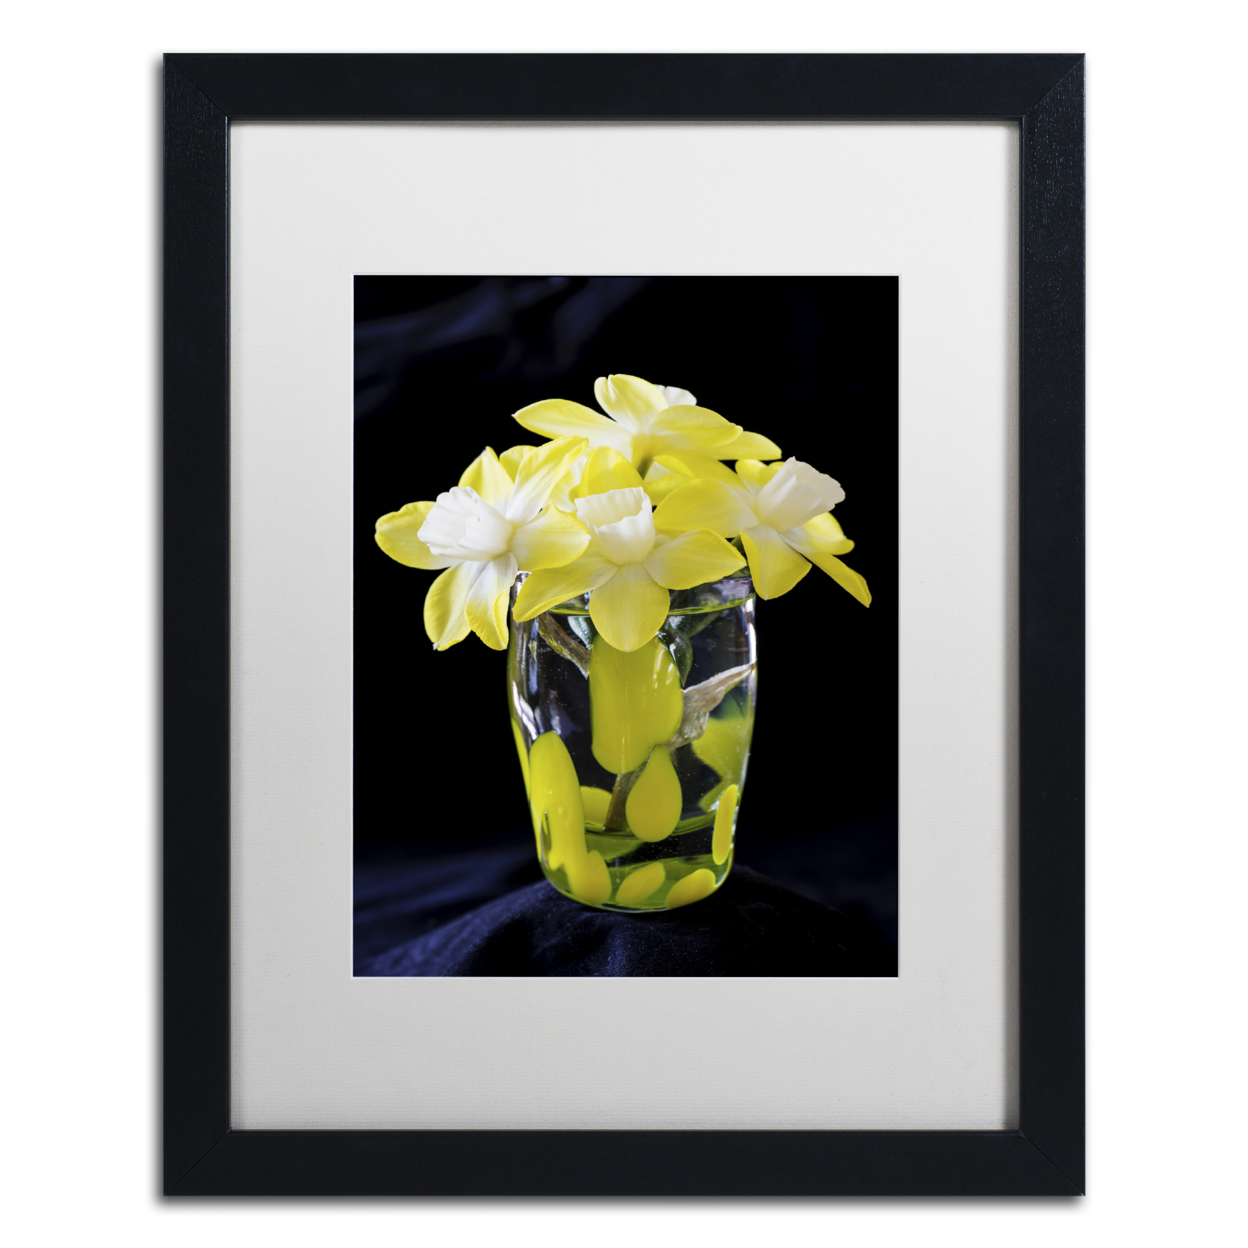 Kurt Shaffer 'Vase Of Little Daffodils' Black Wooden Framed Art 18 X 22 Inches